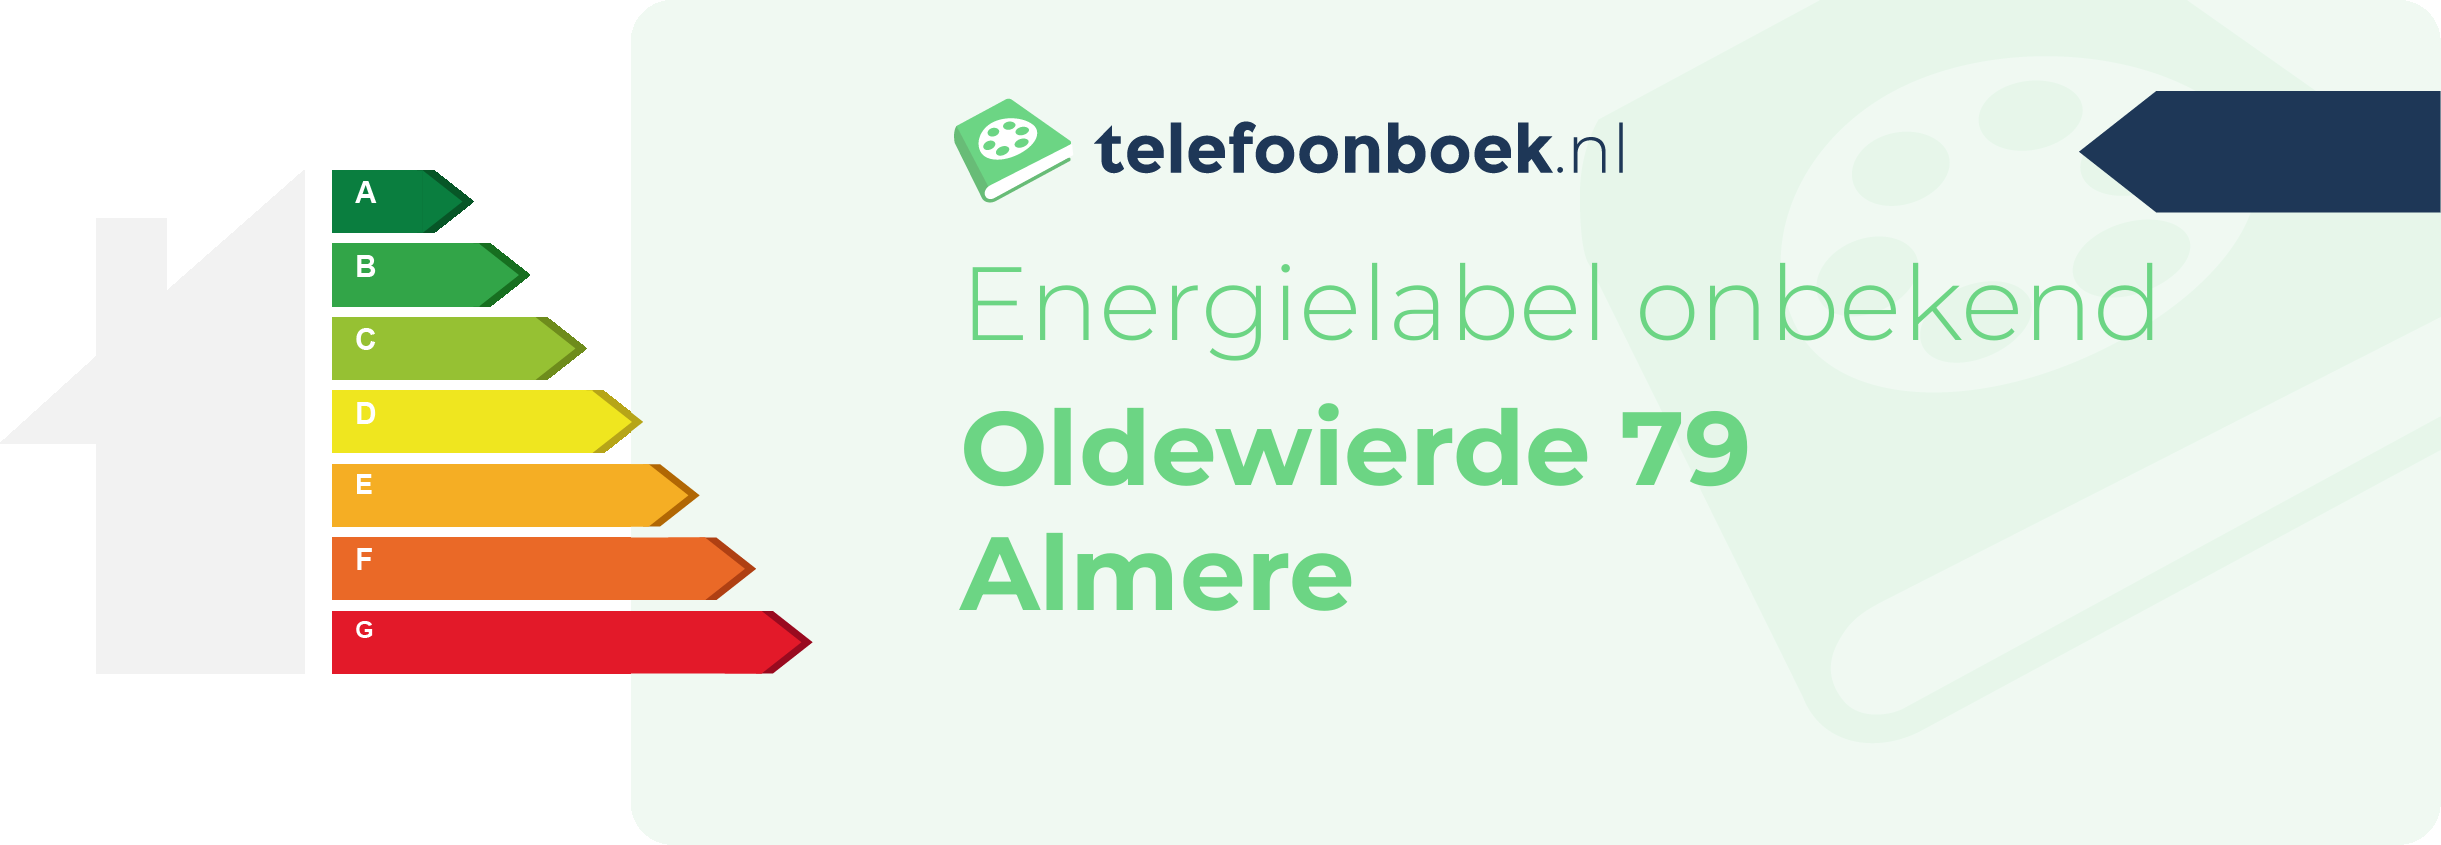 Energielabel Oldewierde 79 Almere